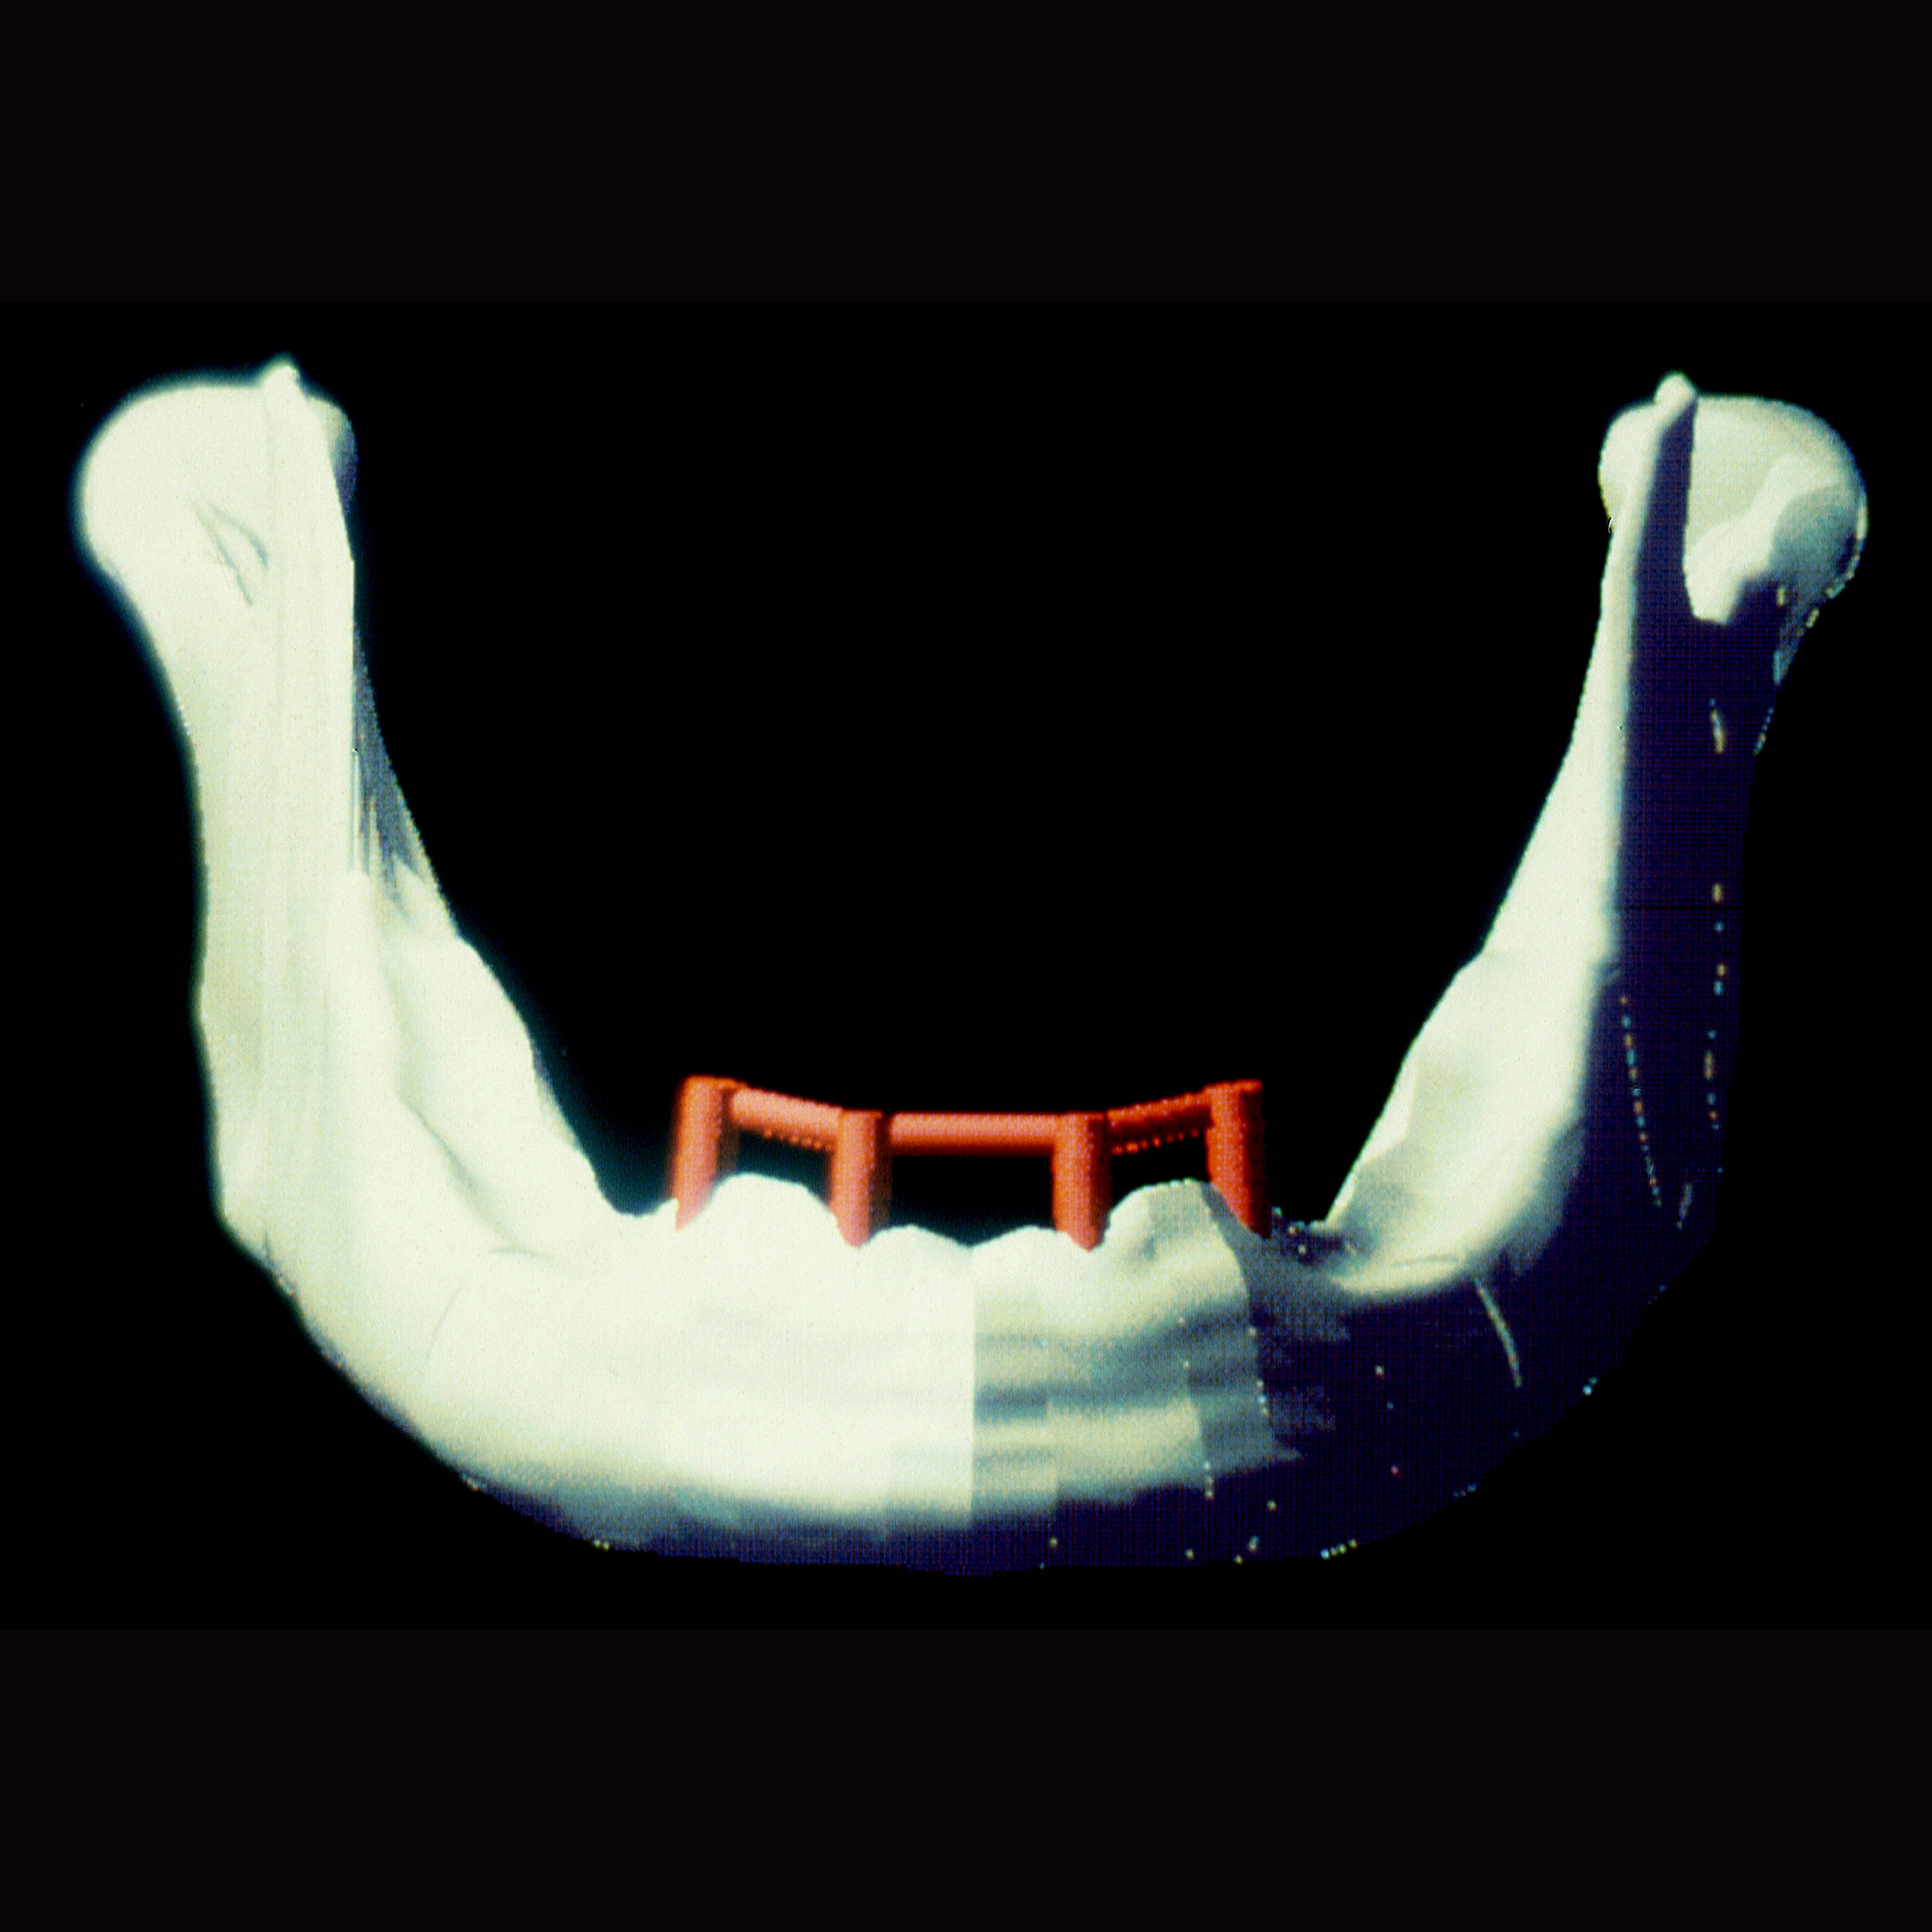 Proefschriften 25 jaar na dato 49. Biomechanische analyse van bot rond tandheelkundige implantaten in de edentate onderkaak